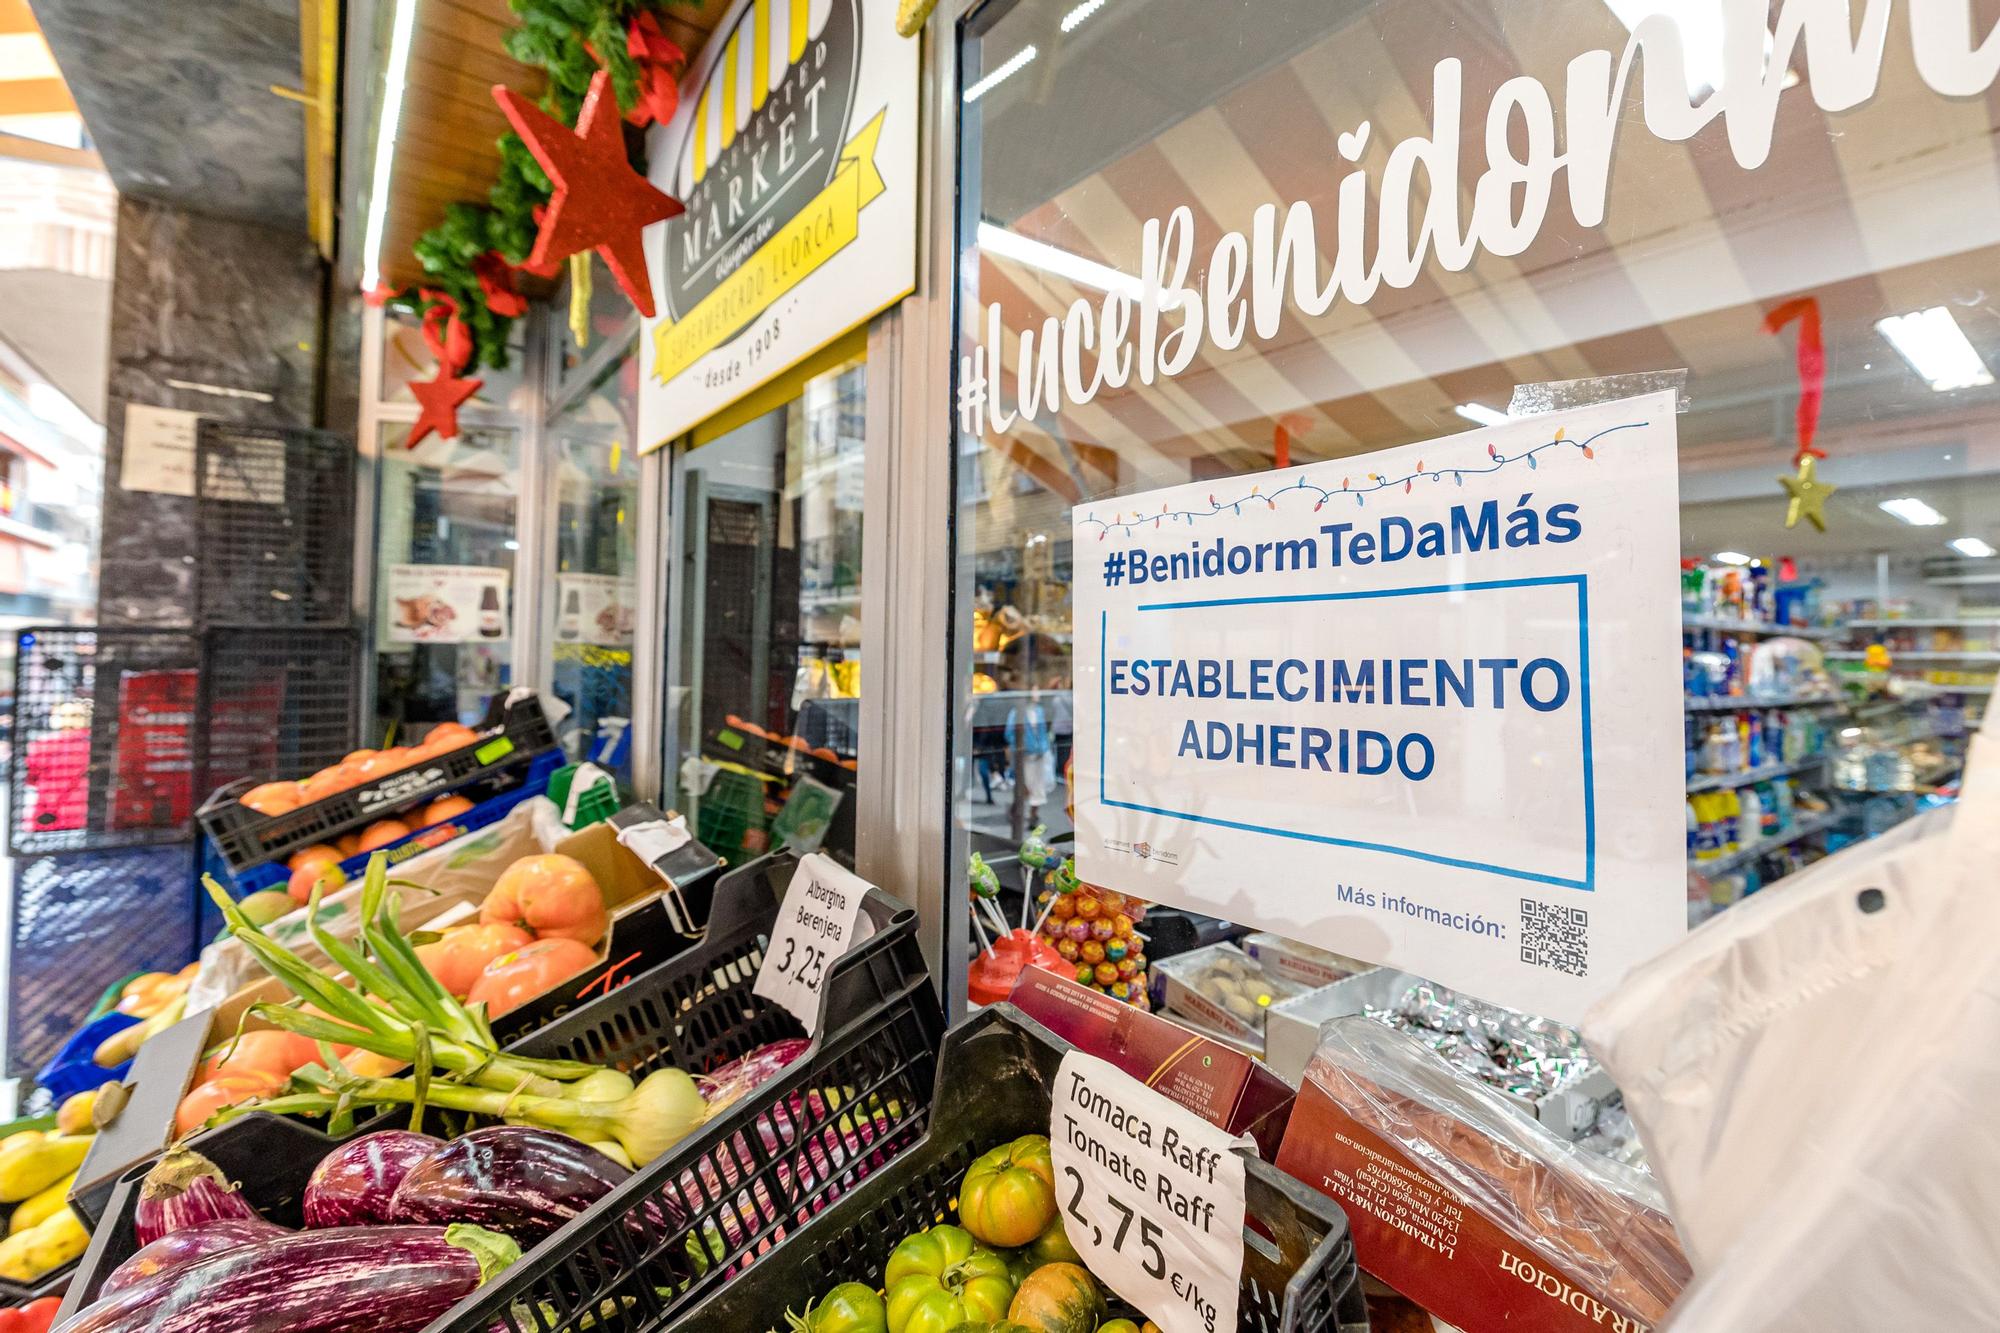 La campaña "BenidormTeDaMás" recibe una avalancha de peticiones de descarga de los bonos descuentos para comercios y hostelería de la ciudad. Los primeros días para gastar estos bonos han provocado colas en algunos establecimientos. La iniciativa, que pretende ayudar al sector e incentivar el consumo, estará en marcha hasta el 31 de diciembre.